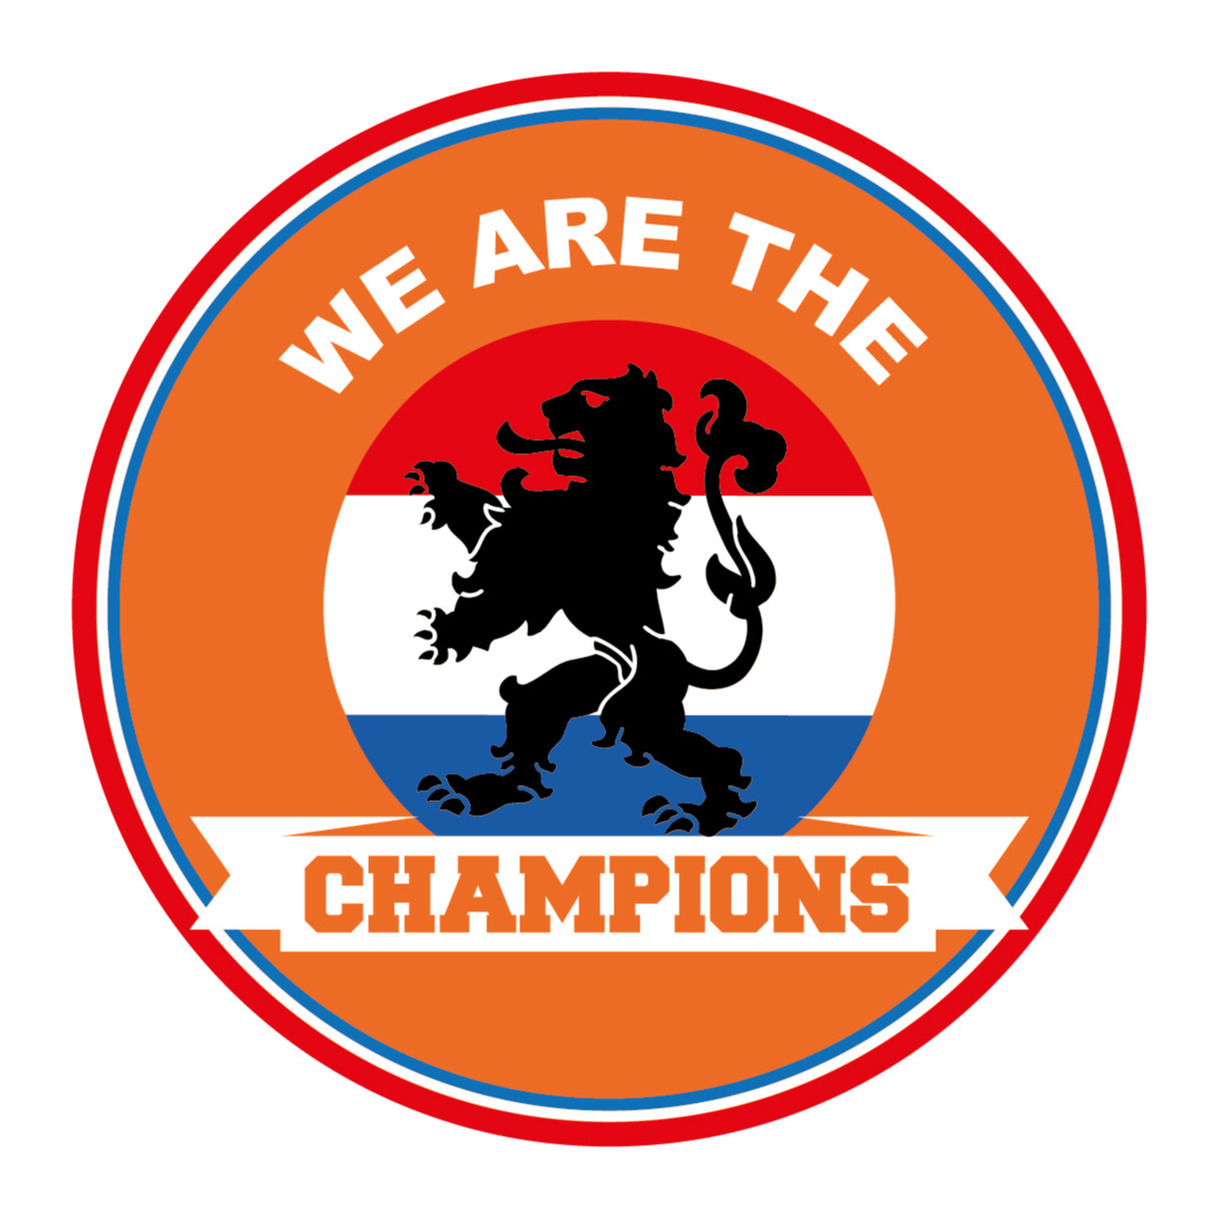 15x stuks Holland bierviltjes we are the champions oranje fan / supporter versiering